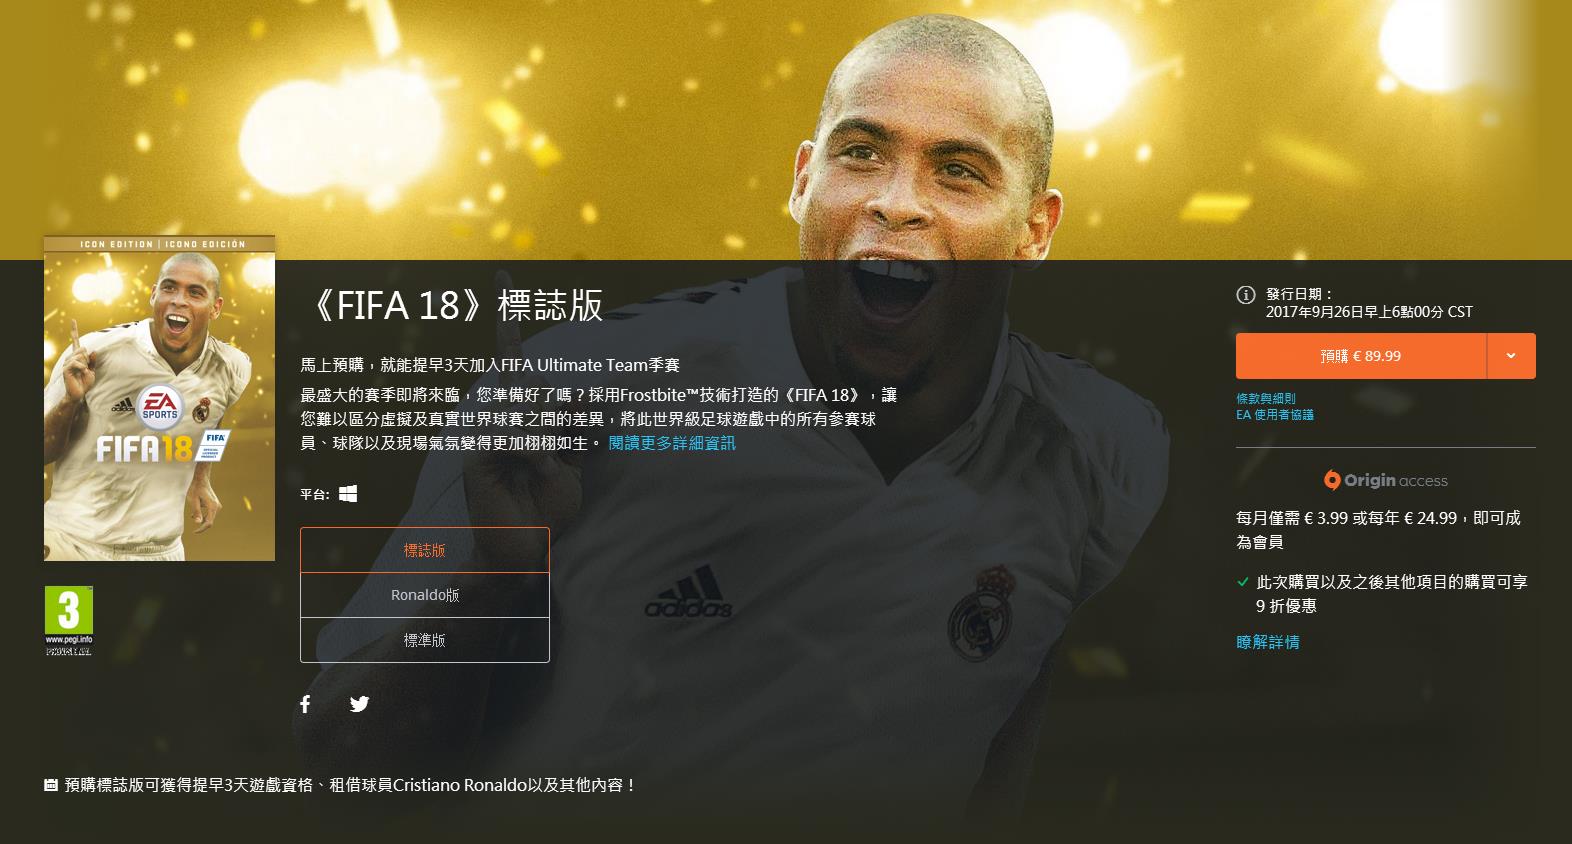 FIFA18怎么买?需要用加速器吗?_搜狐游戏